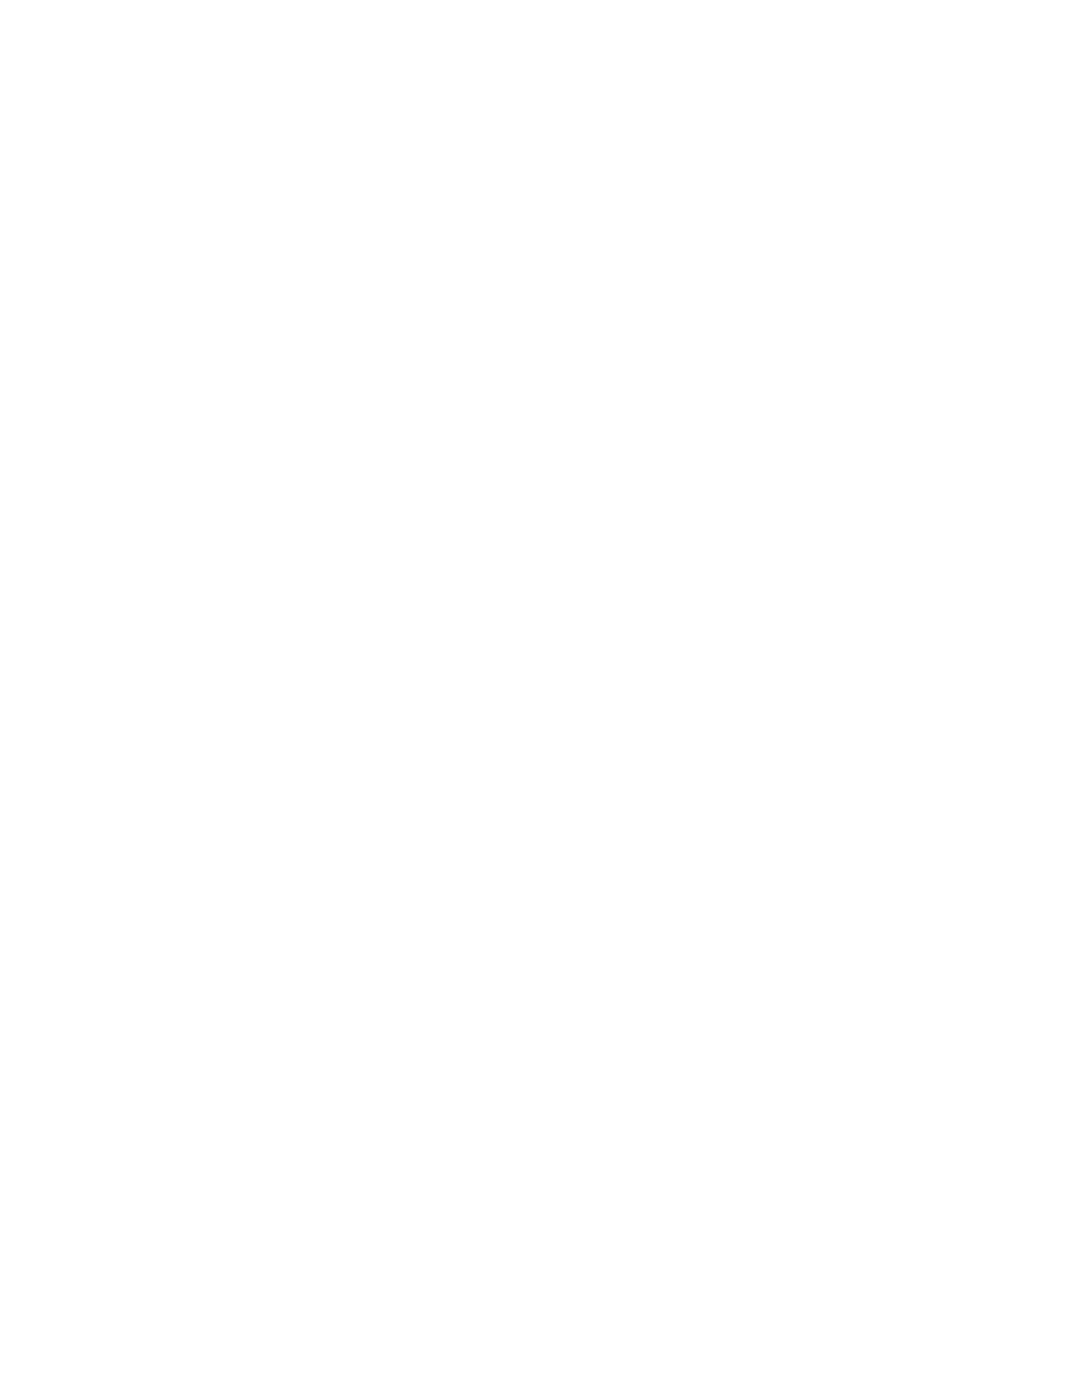 [크기변환]김영남_산업재산권법전[특허법,실용신안법,상표법,디자인보호법](제2판)_내지_Page_04.jpg